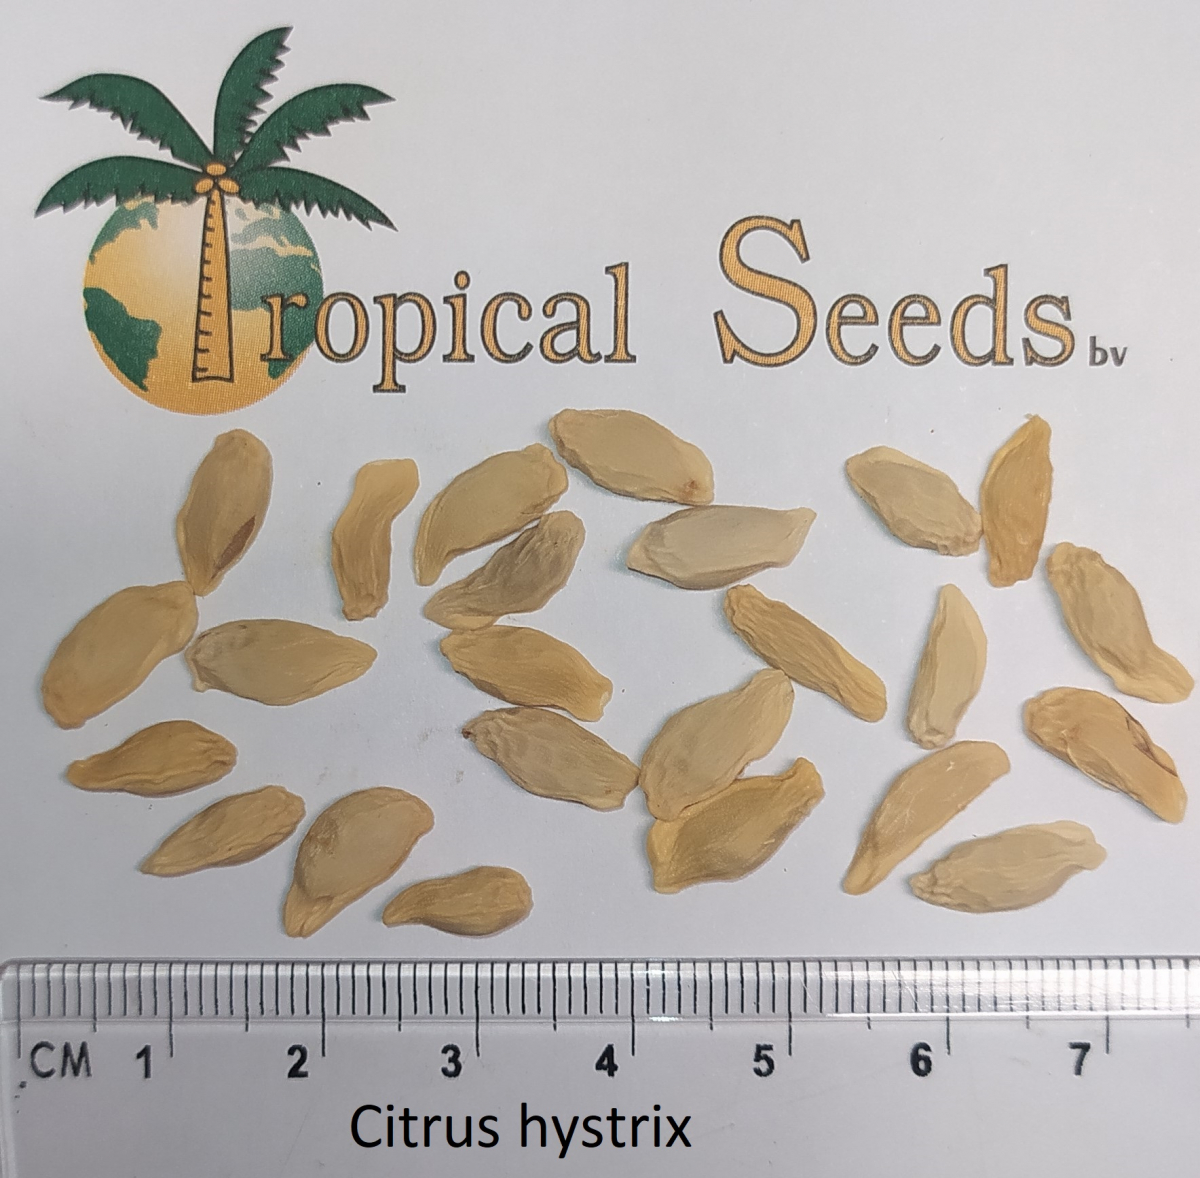 Citrus hystrix 种子